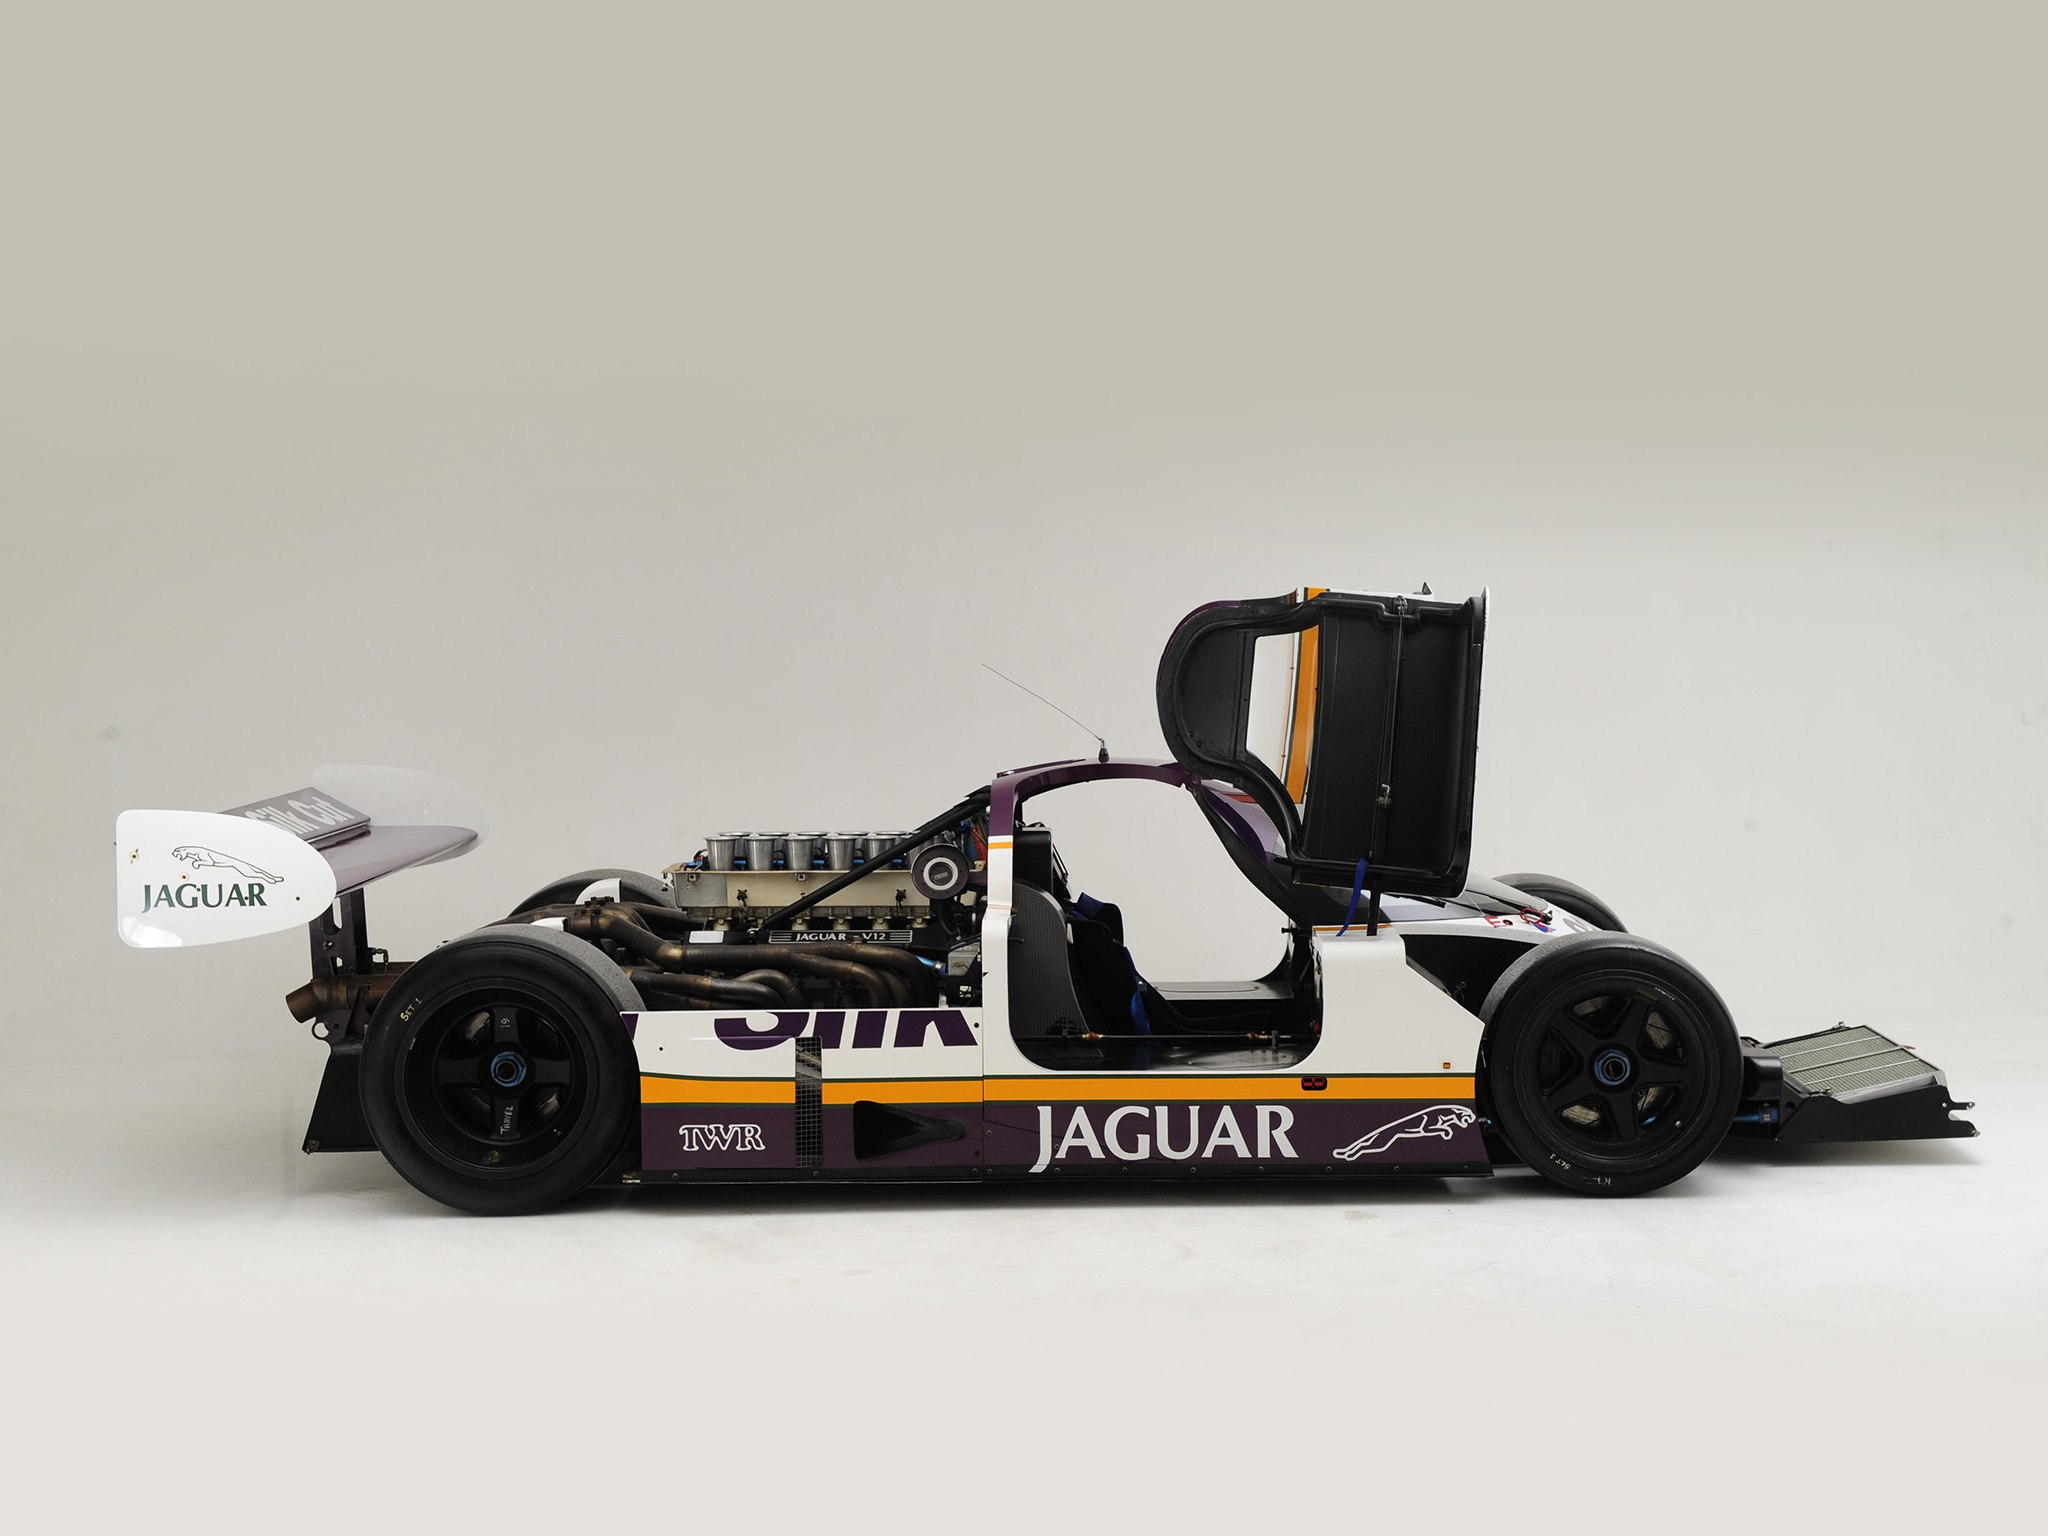 1987, Jaguar, Xjr8, Race, Racing, Le mans, Engine, Interior Wallpaper